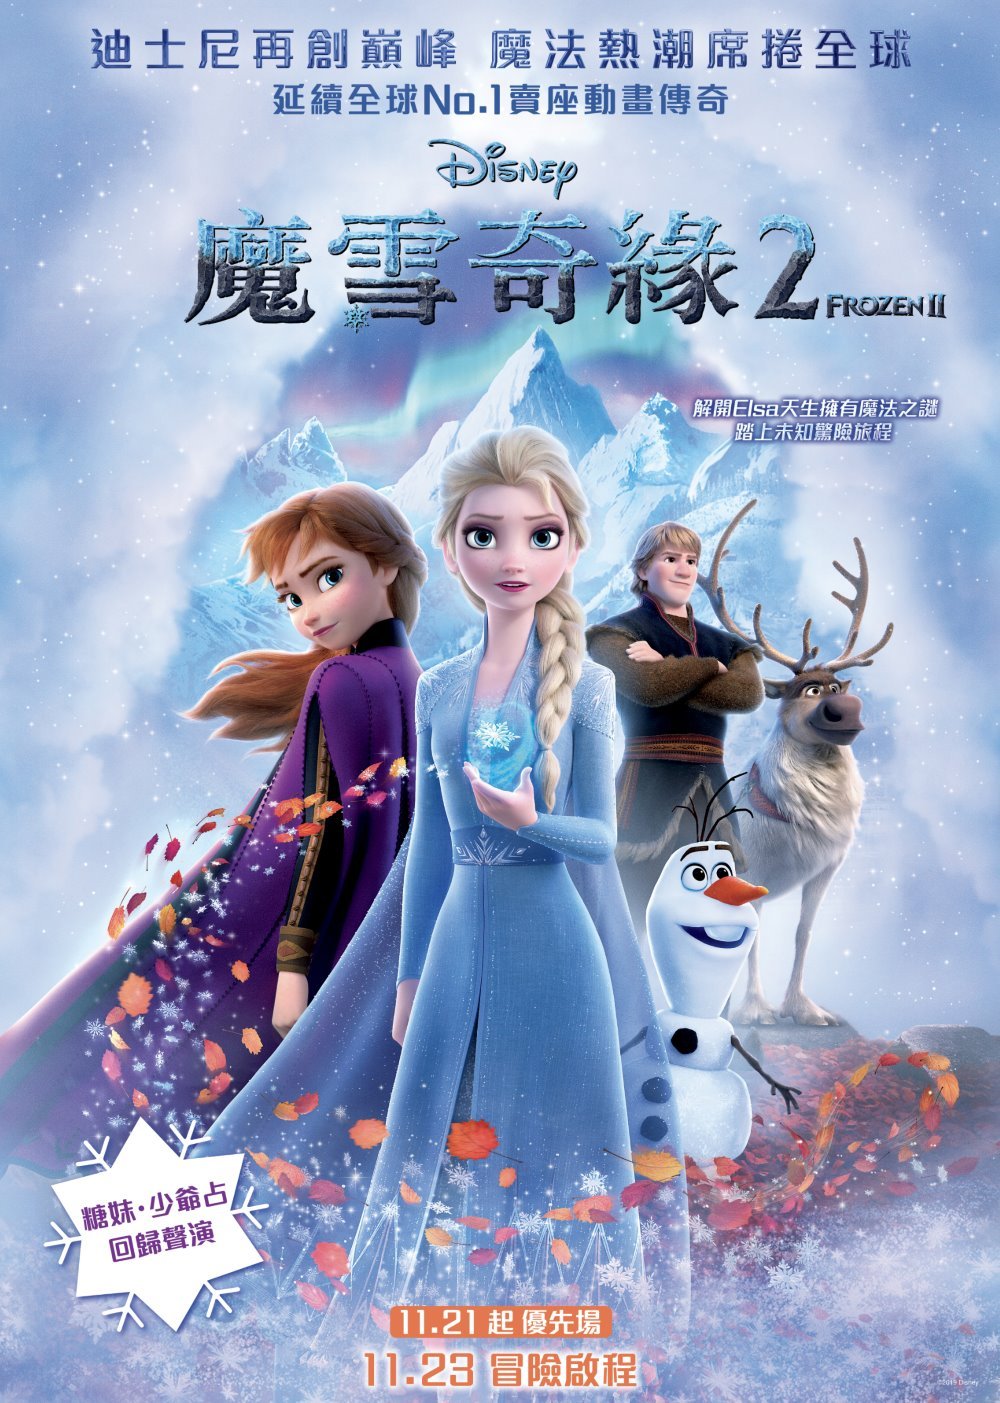 魔雪奇緣2 (2D 全景聲 英語版)電影圖片 - Frozen2_HKPoster_1571659752.jpg